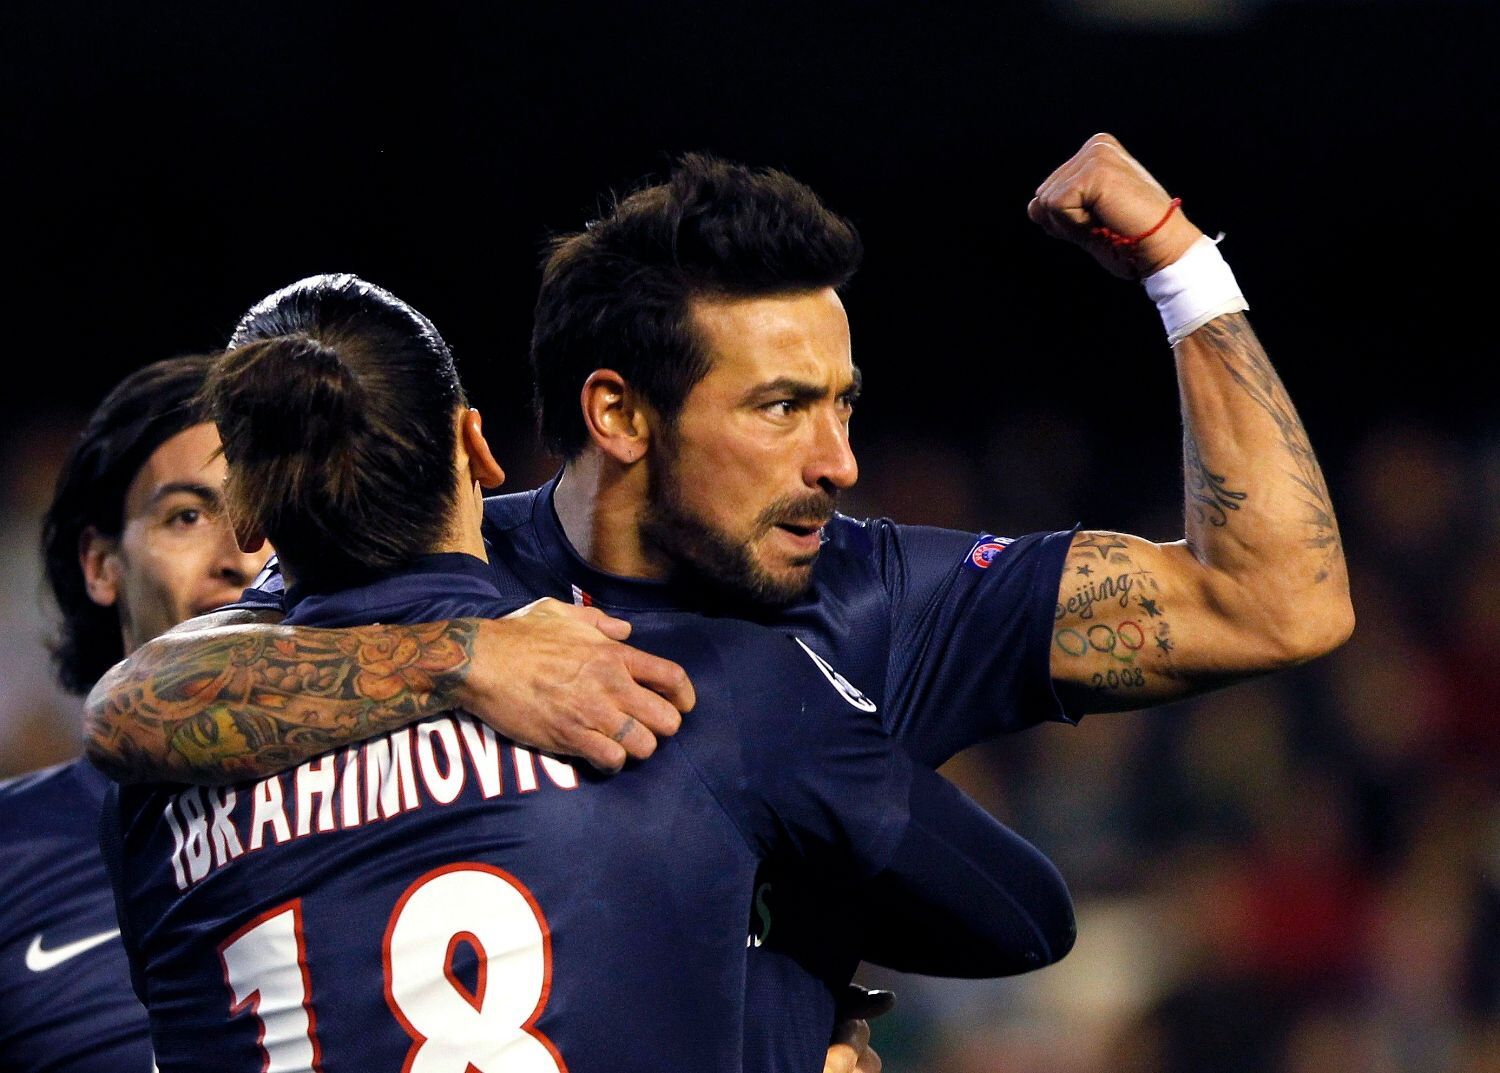 Liga mistrů, Valencie - Paris St. Germain: Ezequiel Lavezzi a Zlatan Ibrahimovič (PSG)